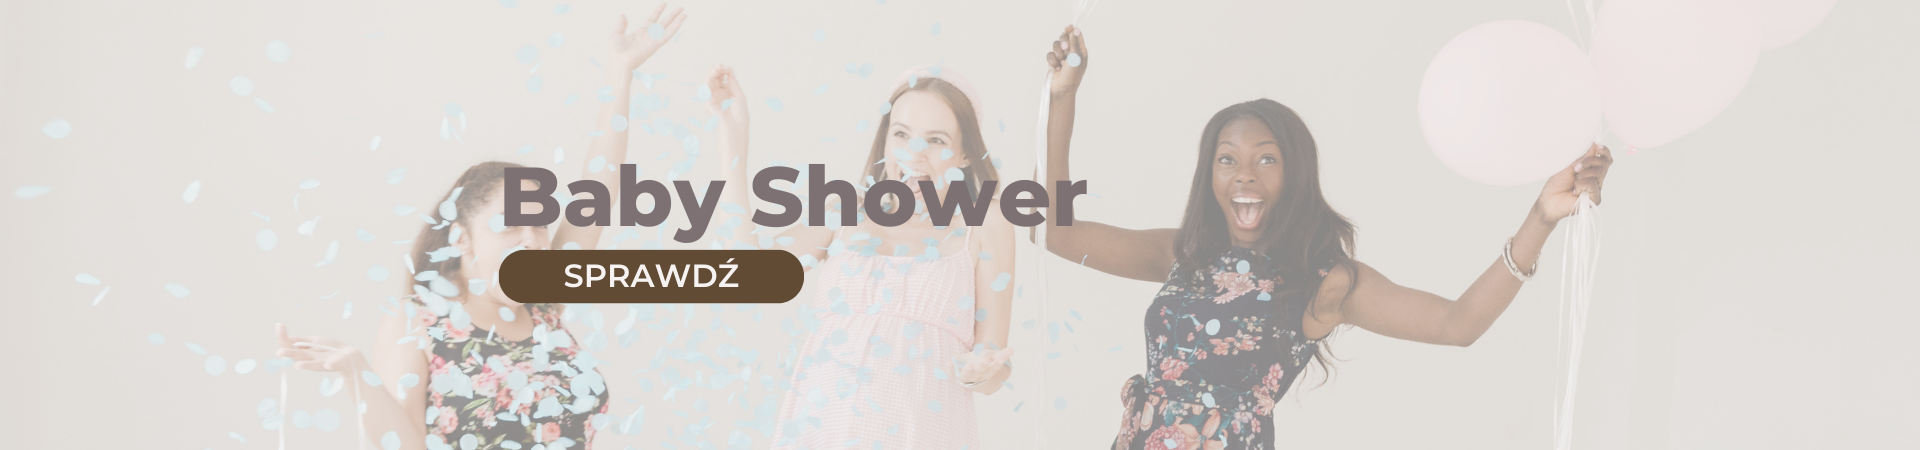 hero-baby-shower